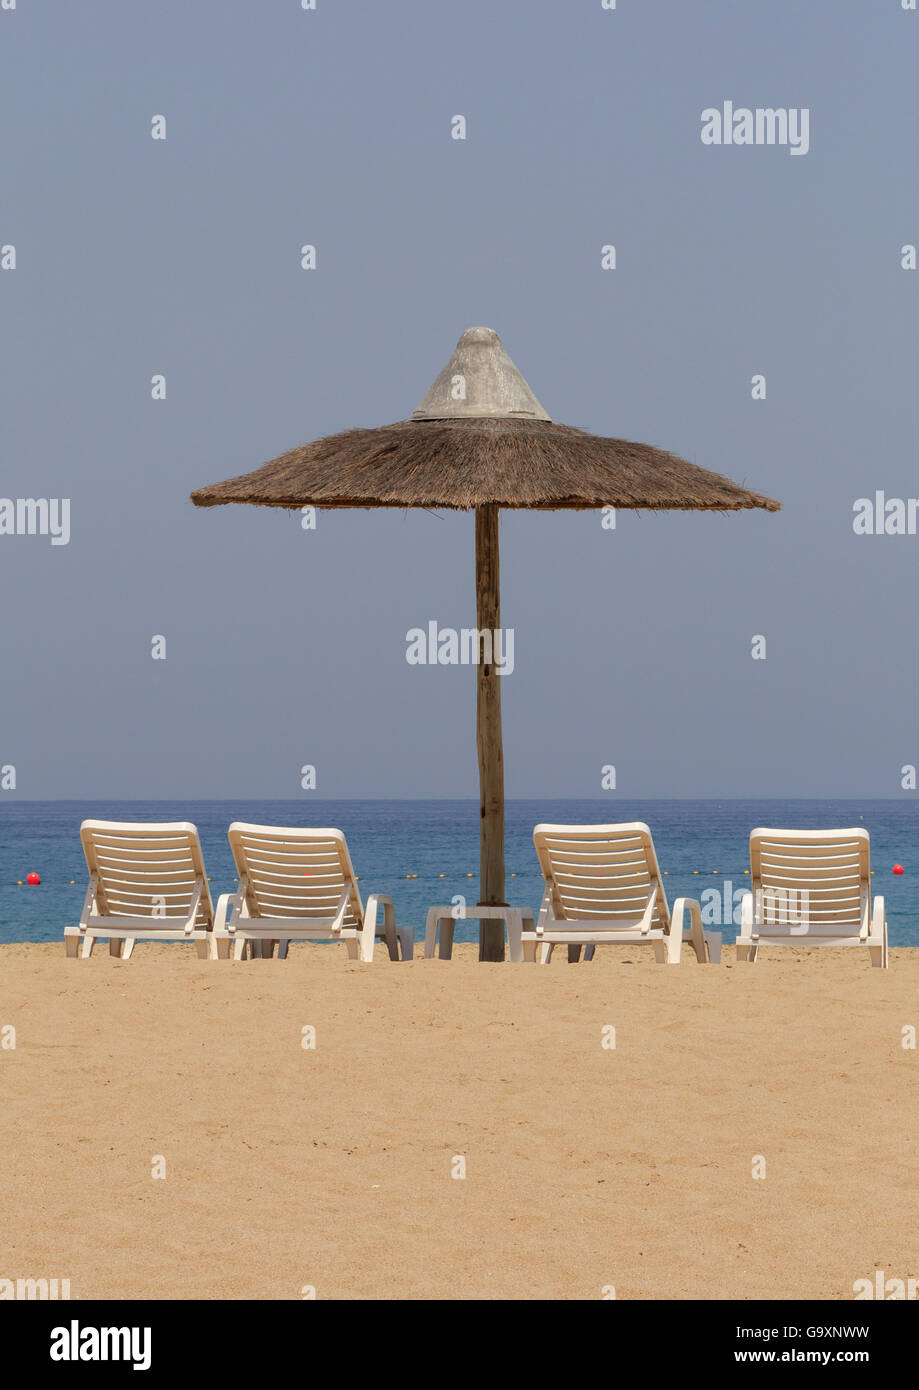 sunshade tent and chairs on beach in Fujairah, UAE Stock Photo